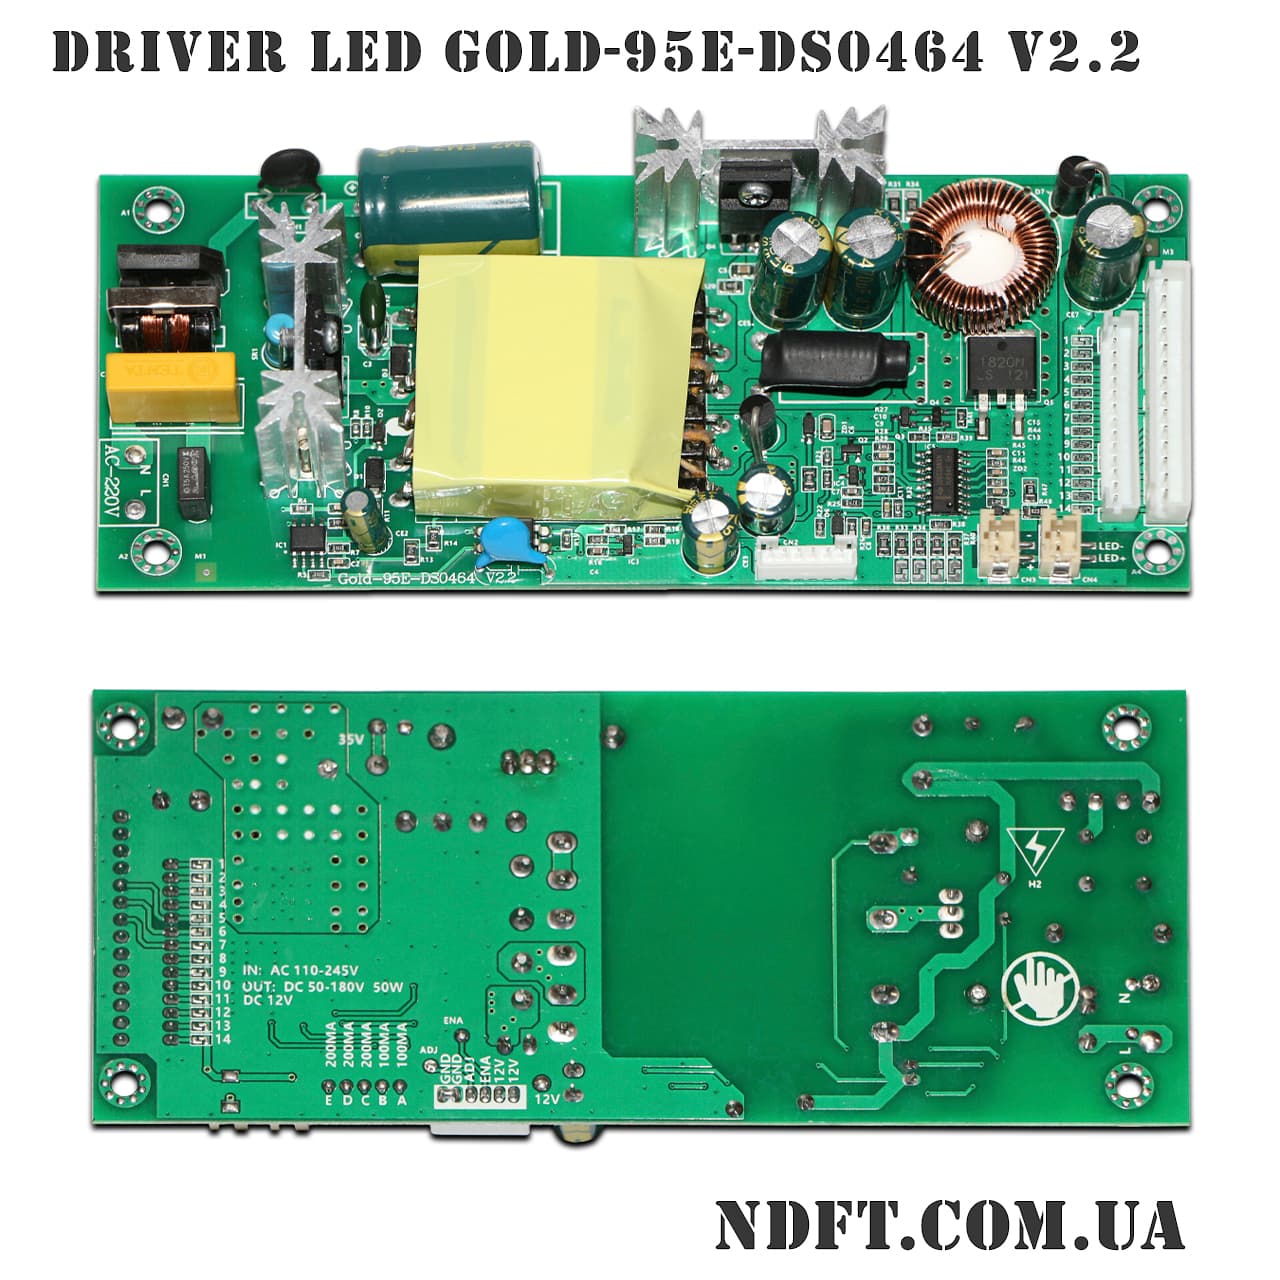 Gold-95E (Gold-95E-DS0464 V2/V2.2) – Универсальный драйвер, плата .